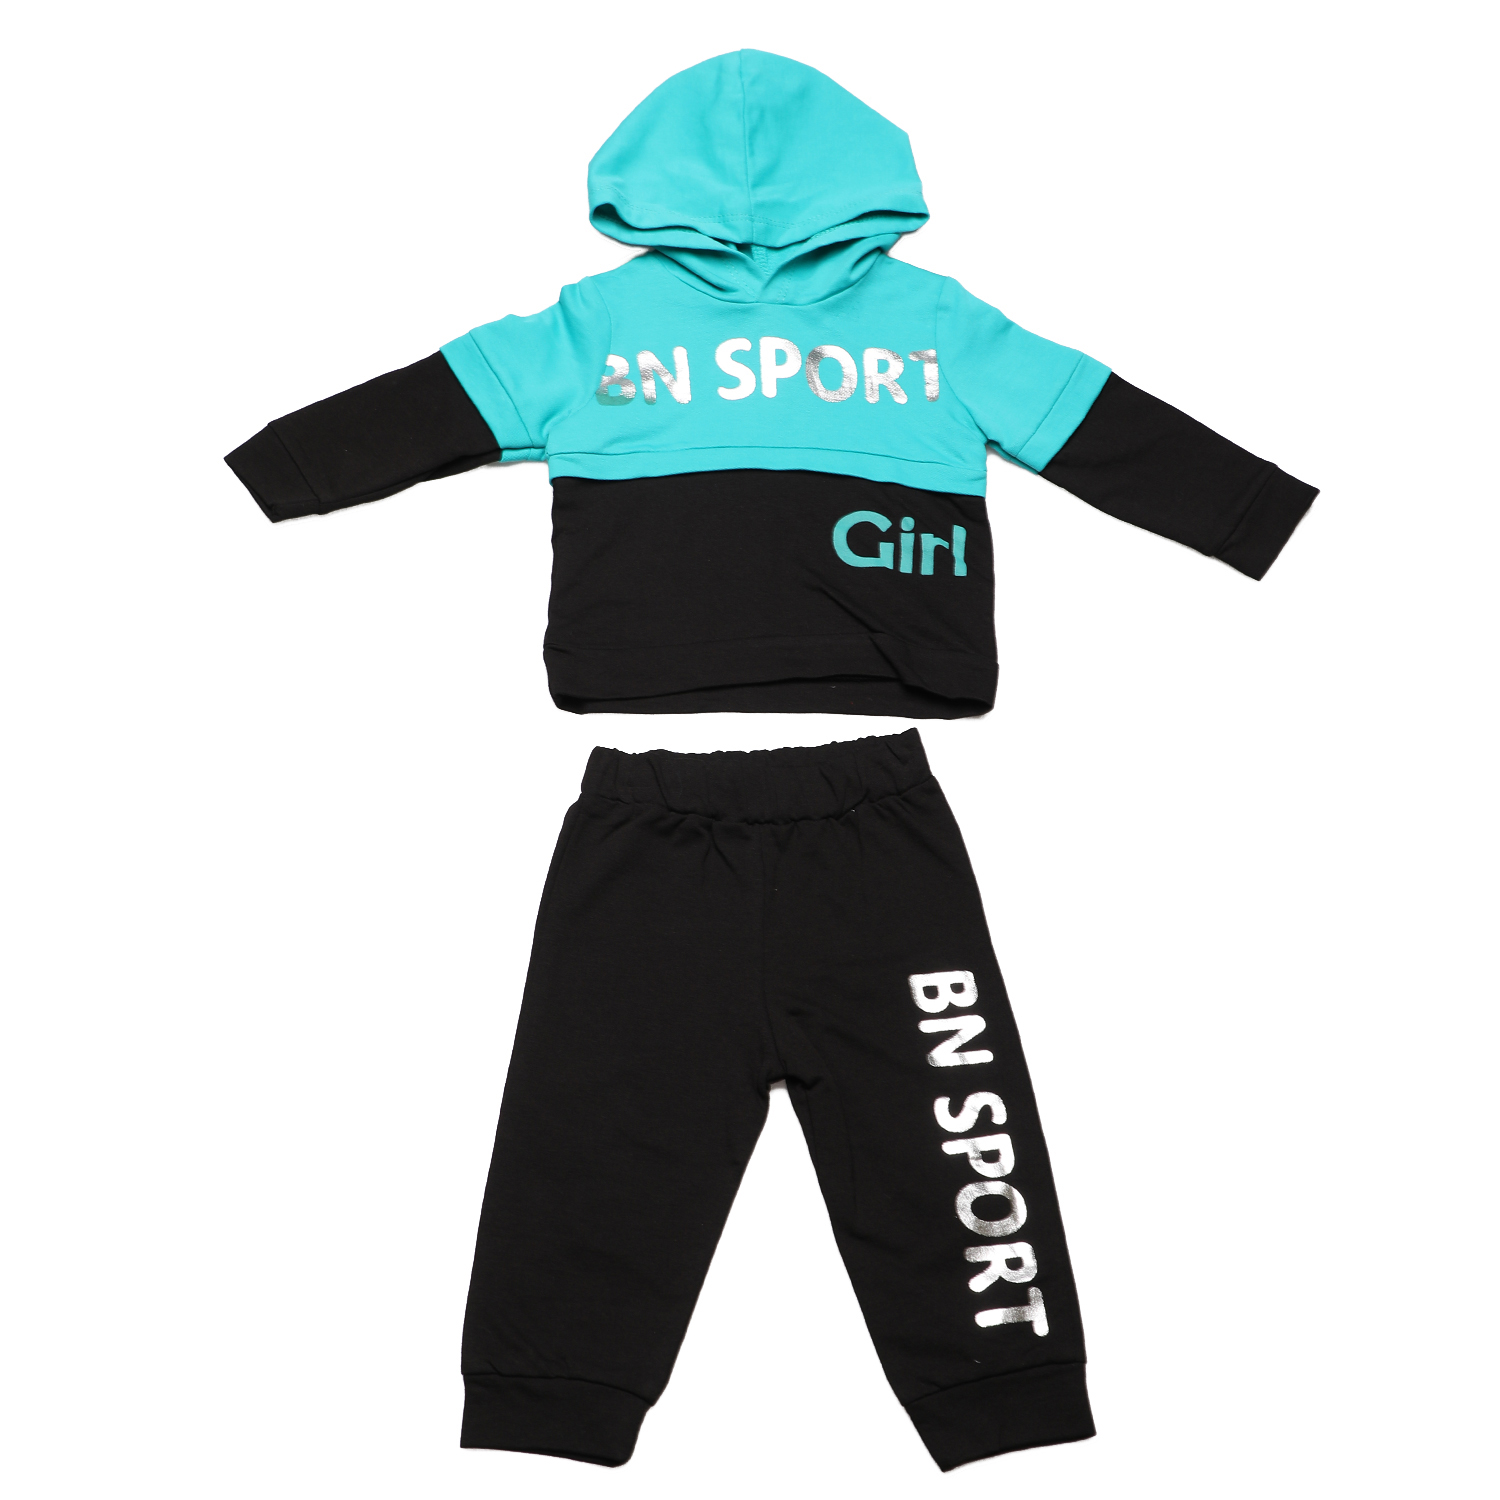 Παιδικά/Baby/Ρούχα/Σετ SAM 0-13 - Βρεφικό σετ φόρμας SAM 0-13 BN SPORT GIRL μαύρο μπλε